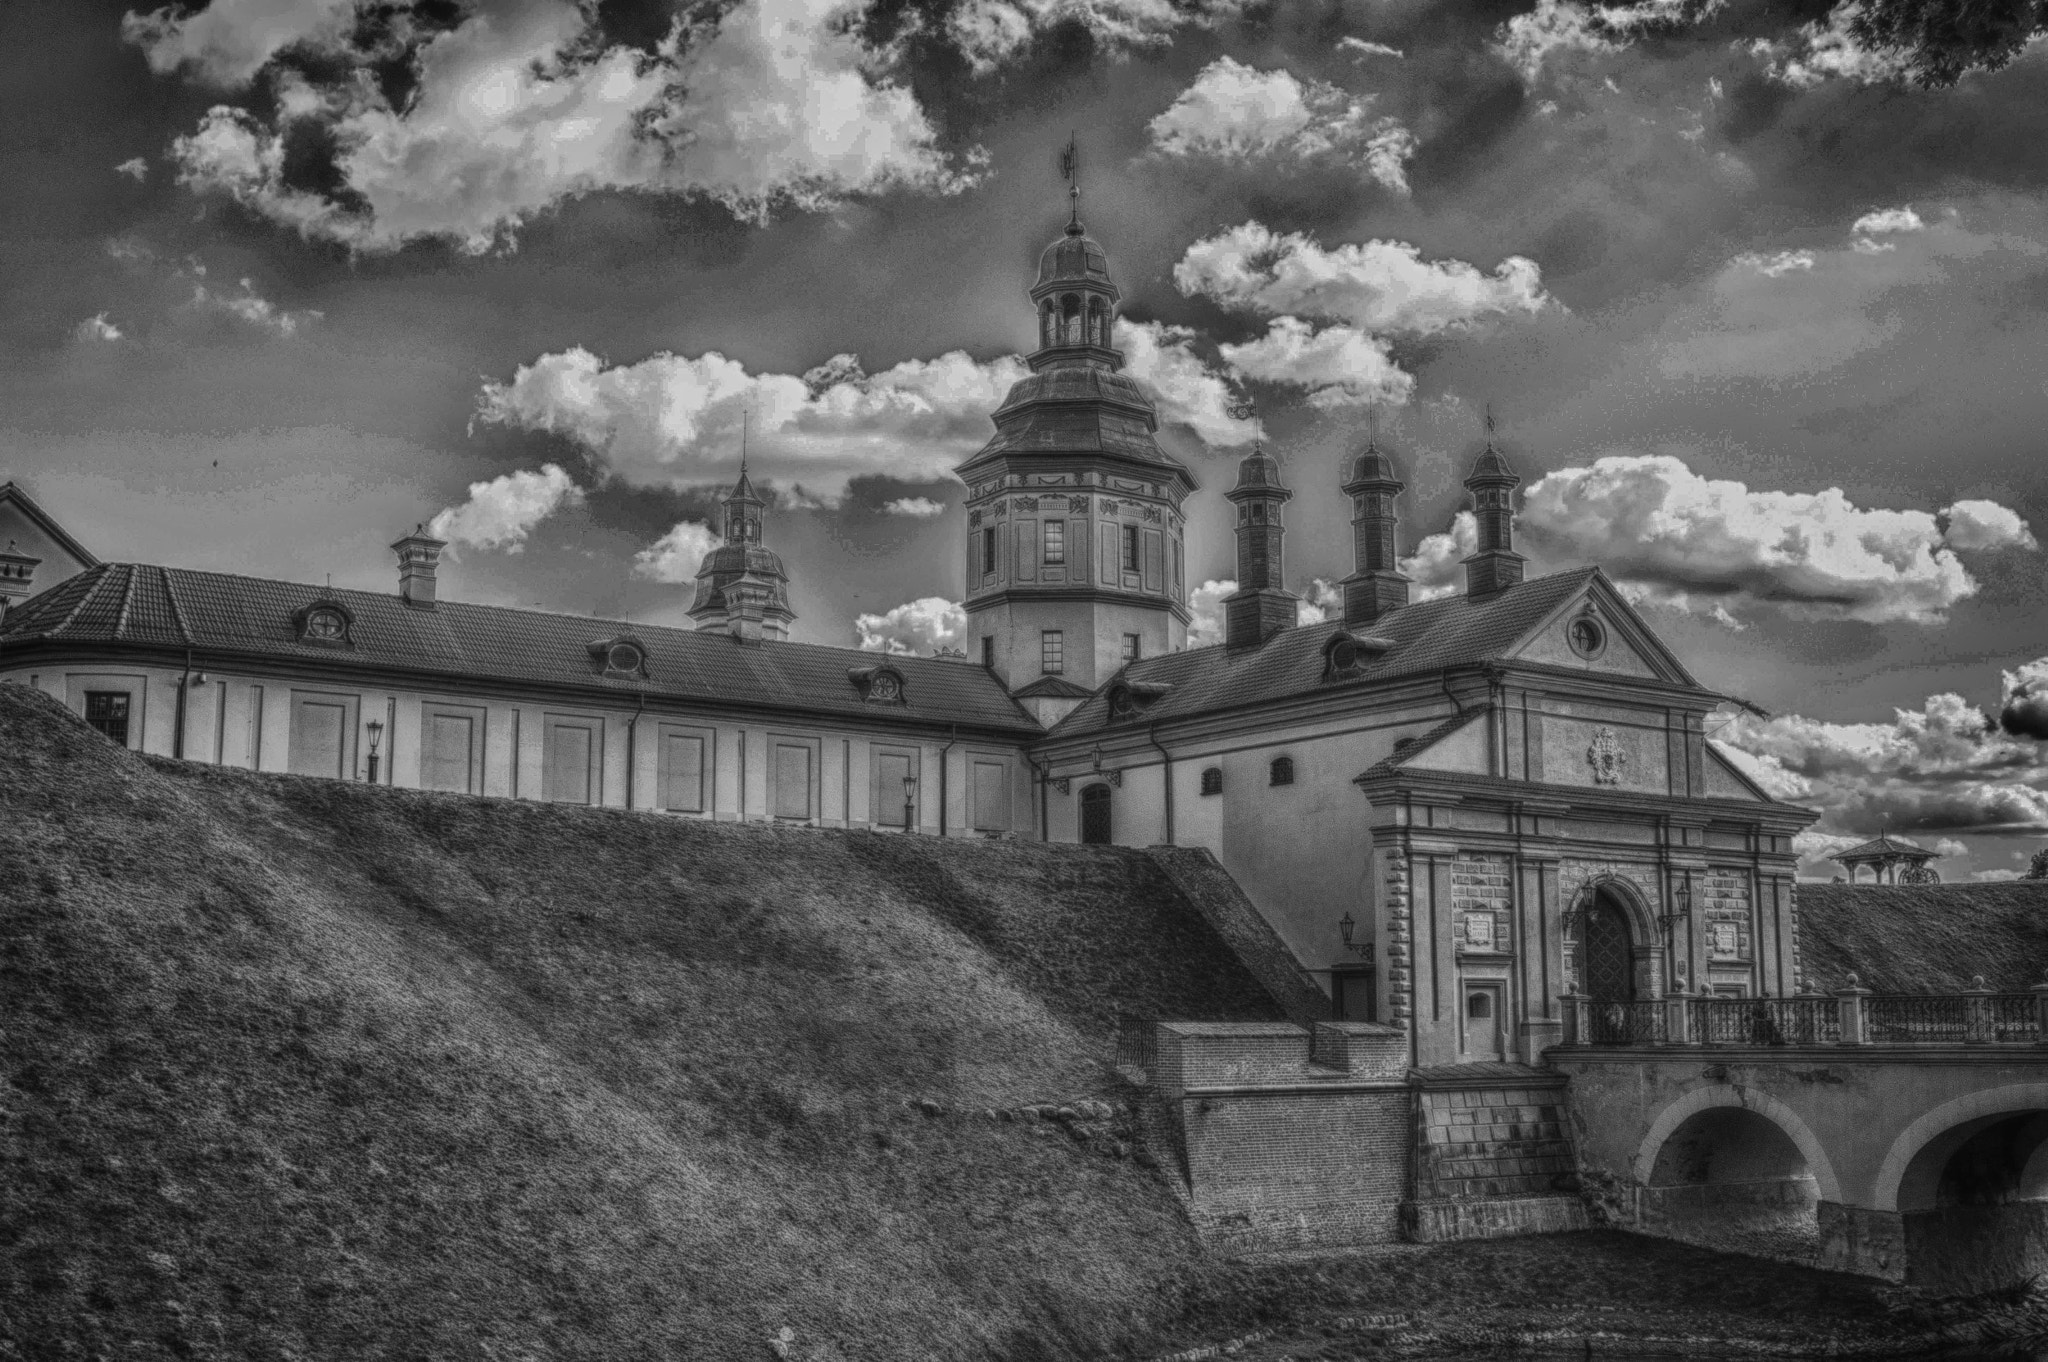 Nikon D3200 sample photo. Nesvizh castle. belarus photography